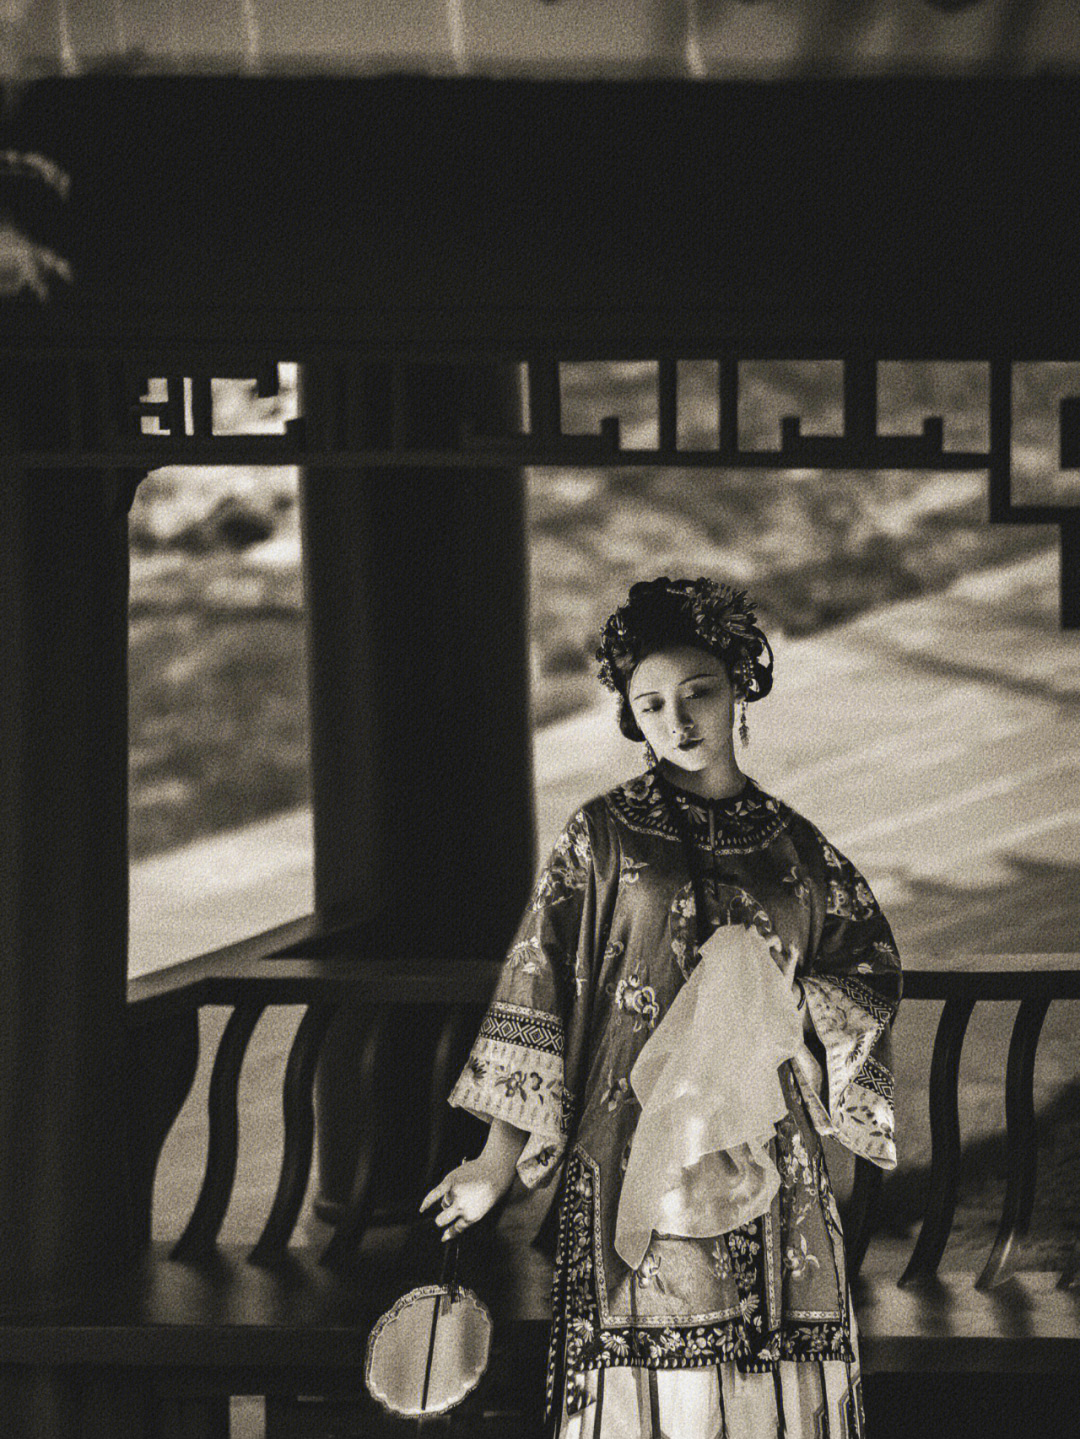 分享一组晚清西南地区汉族女子珍贵影像